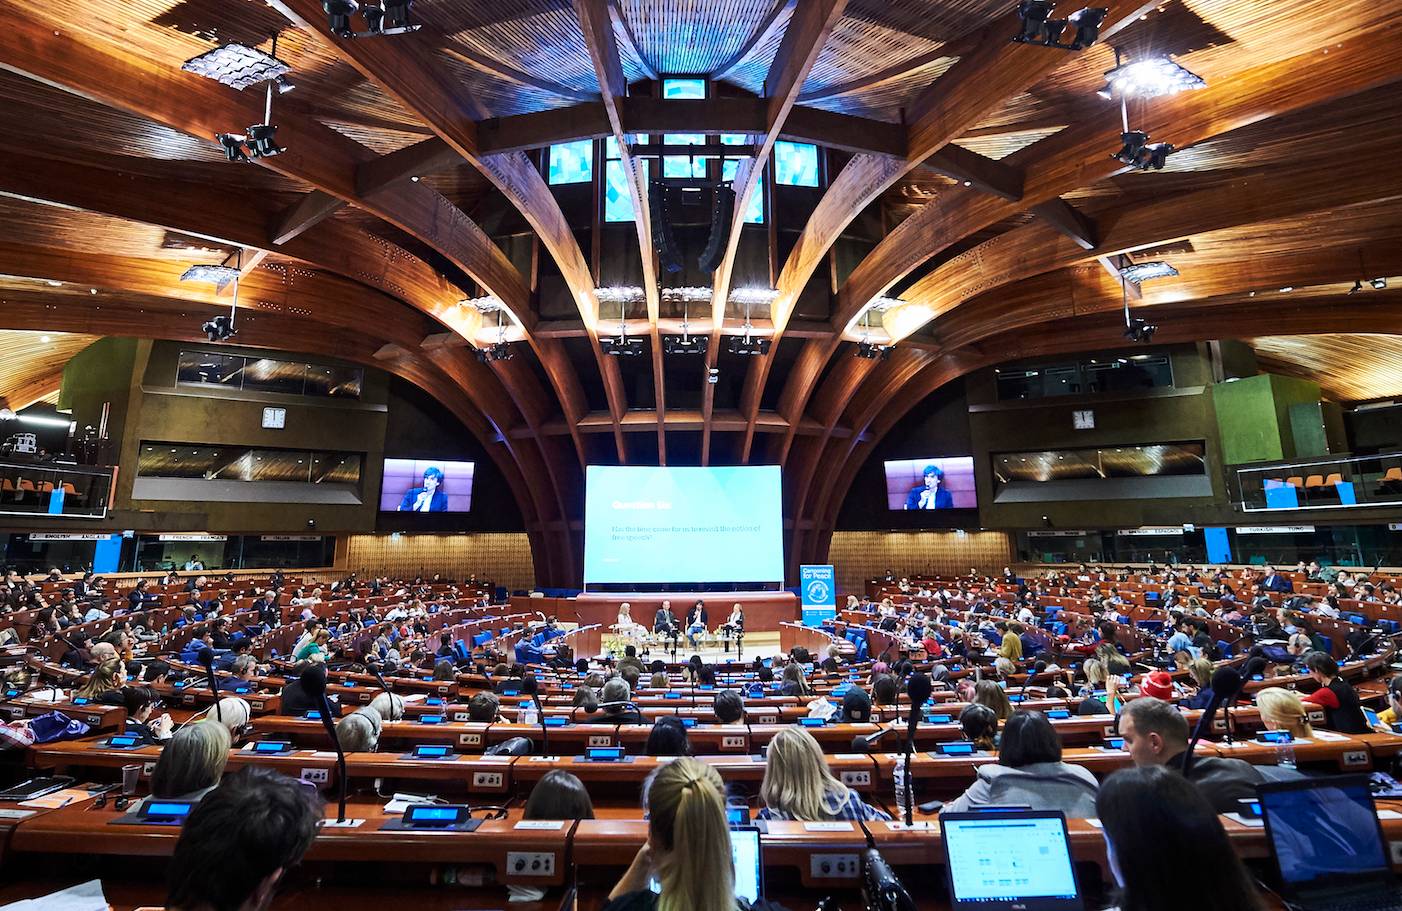 Sala posiedzeń plenarnych, w środku wielki ekran - Rada Europy w Reykjaviku